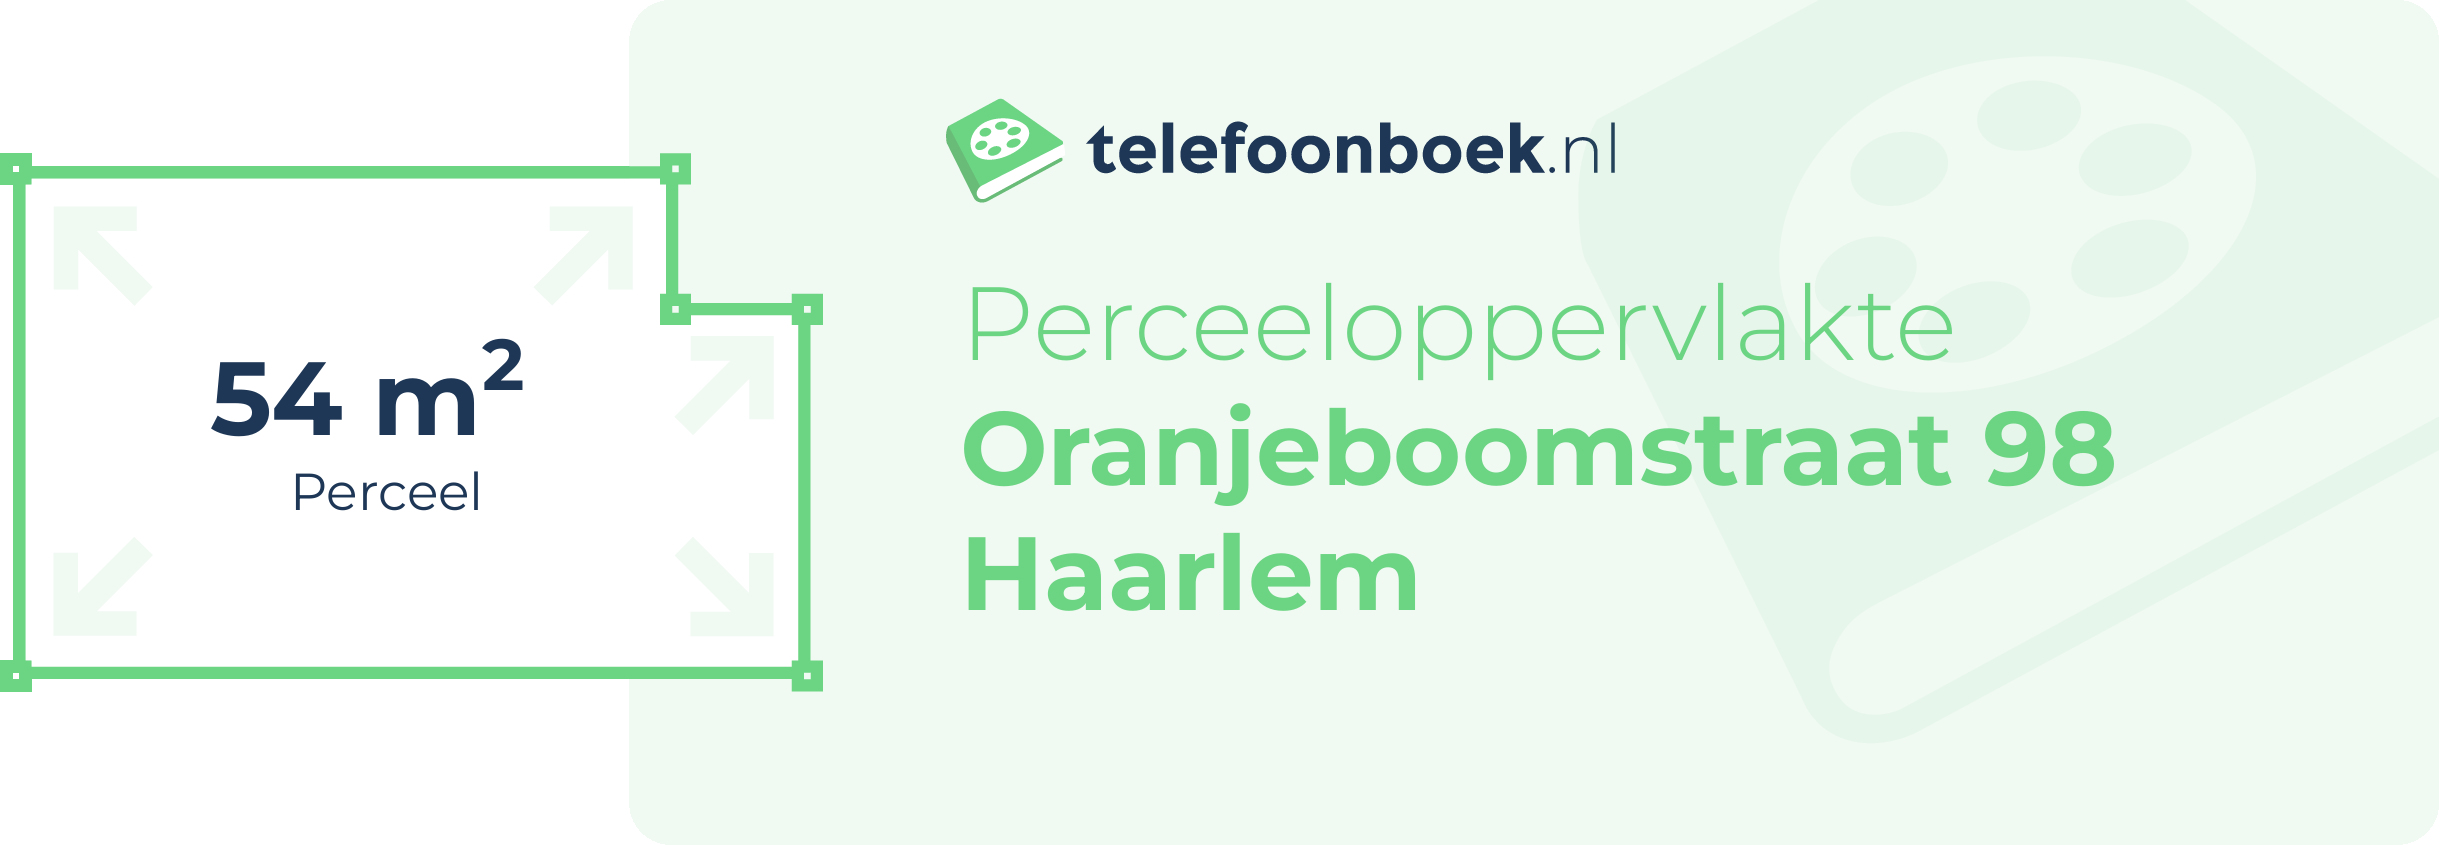 Perceeloppervlakte Oranjeboomstraat 98 Haarlem